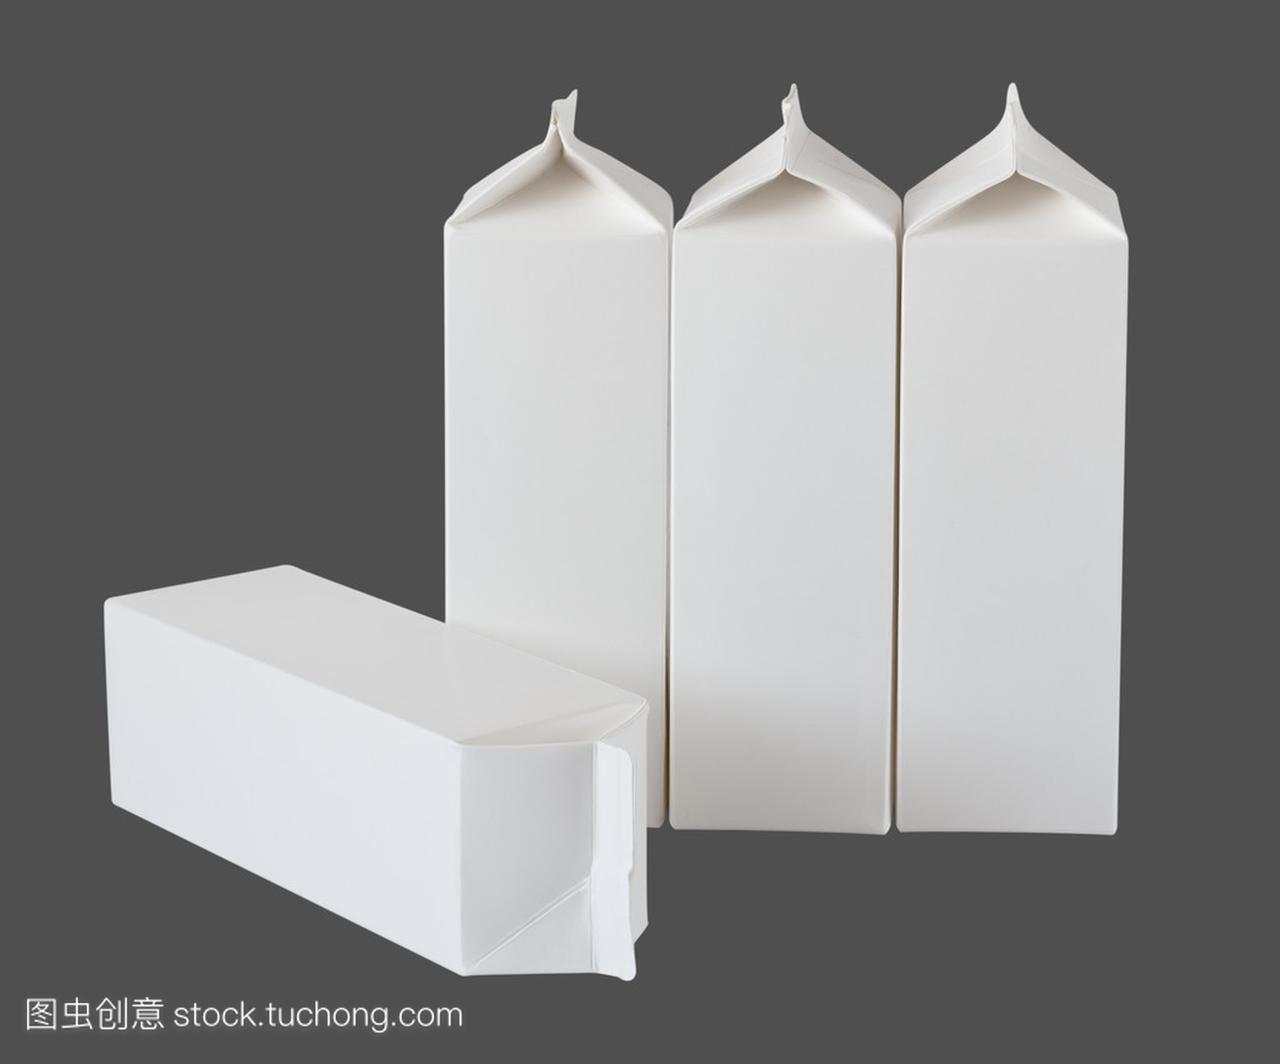 四个牛奶盒每升和升上灰色